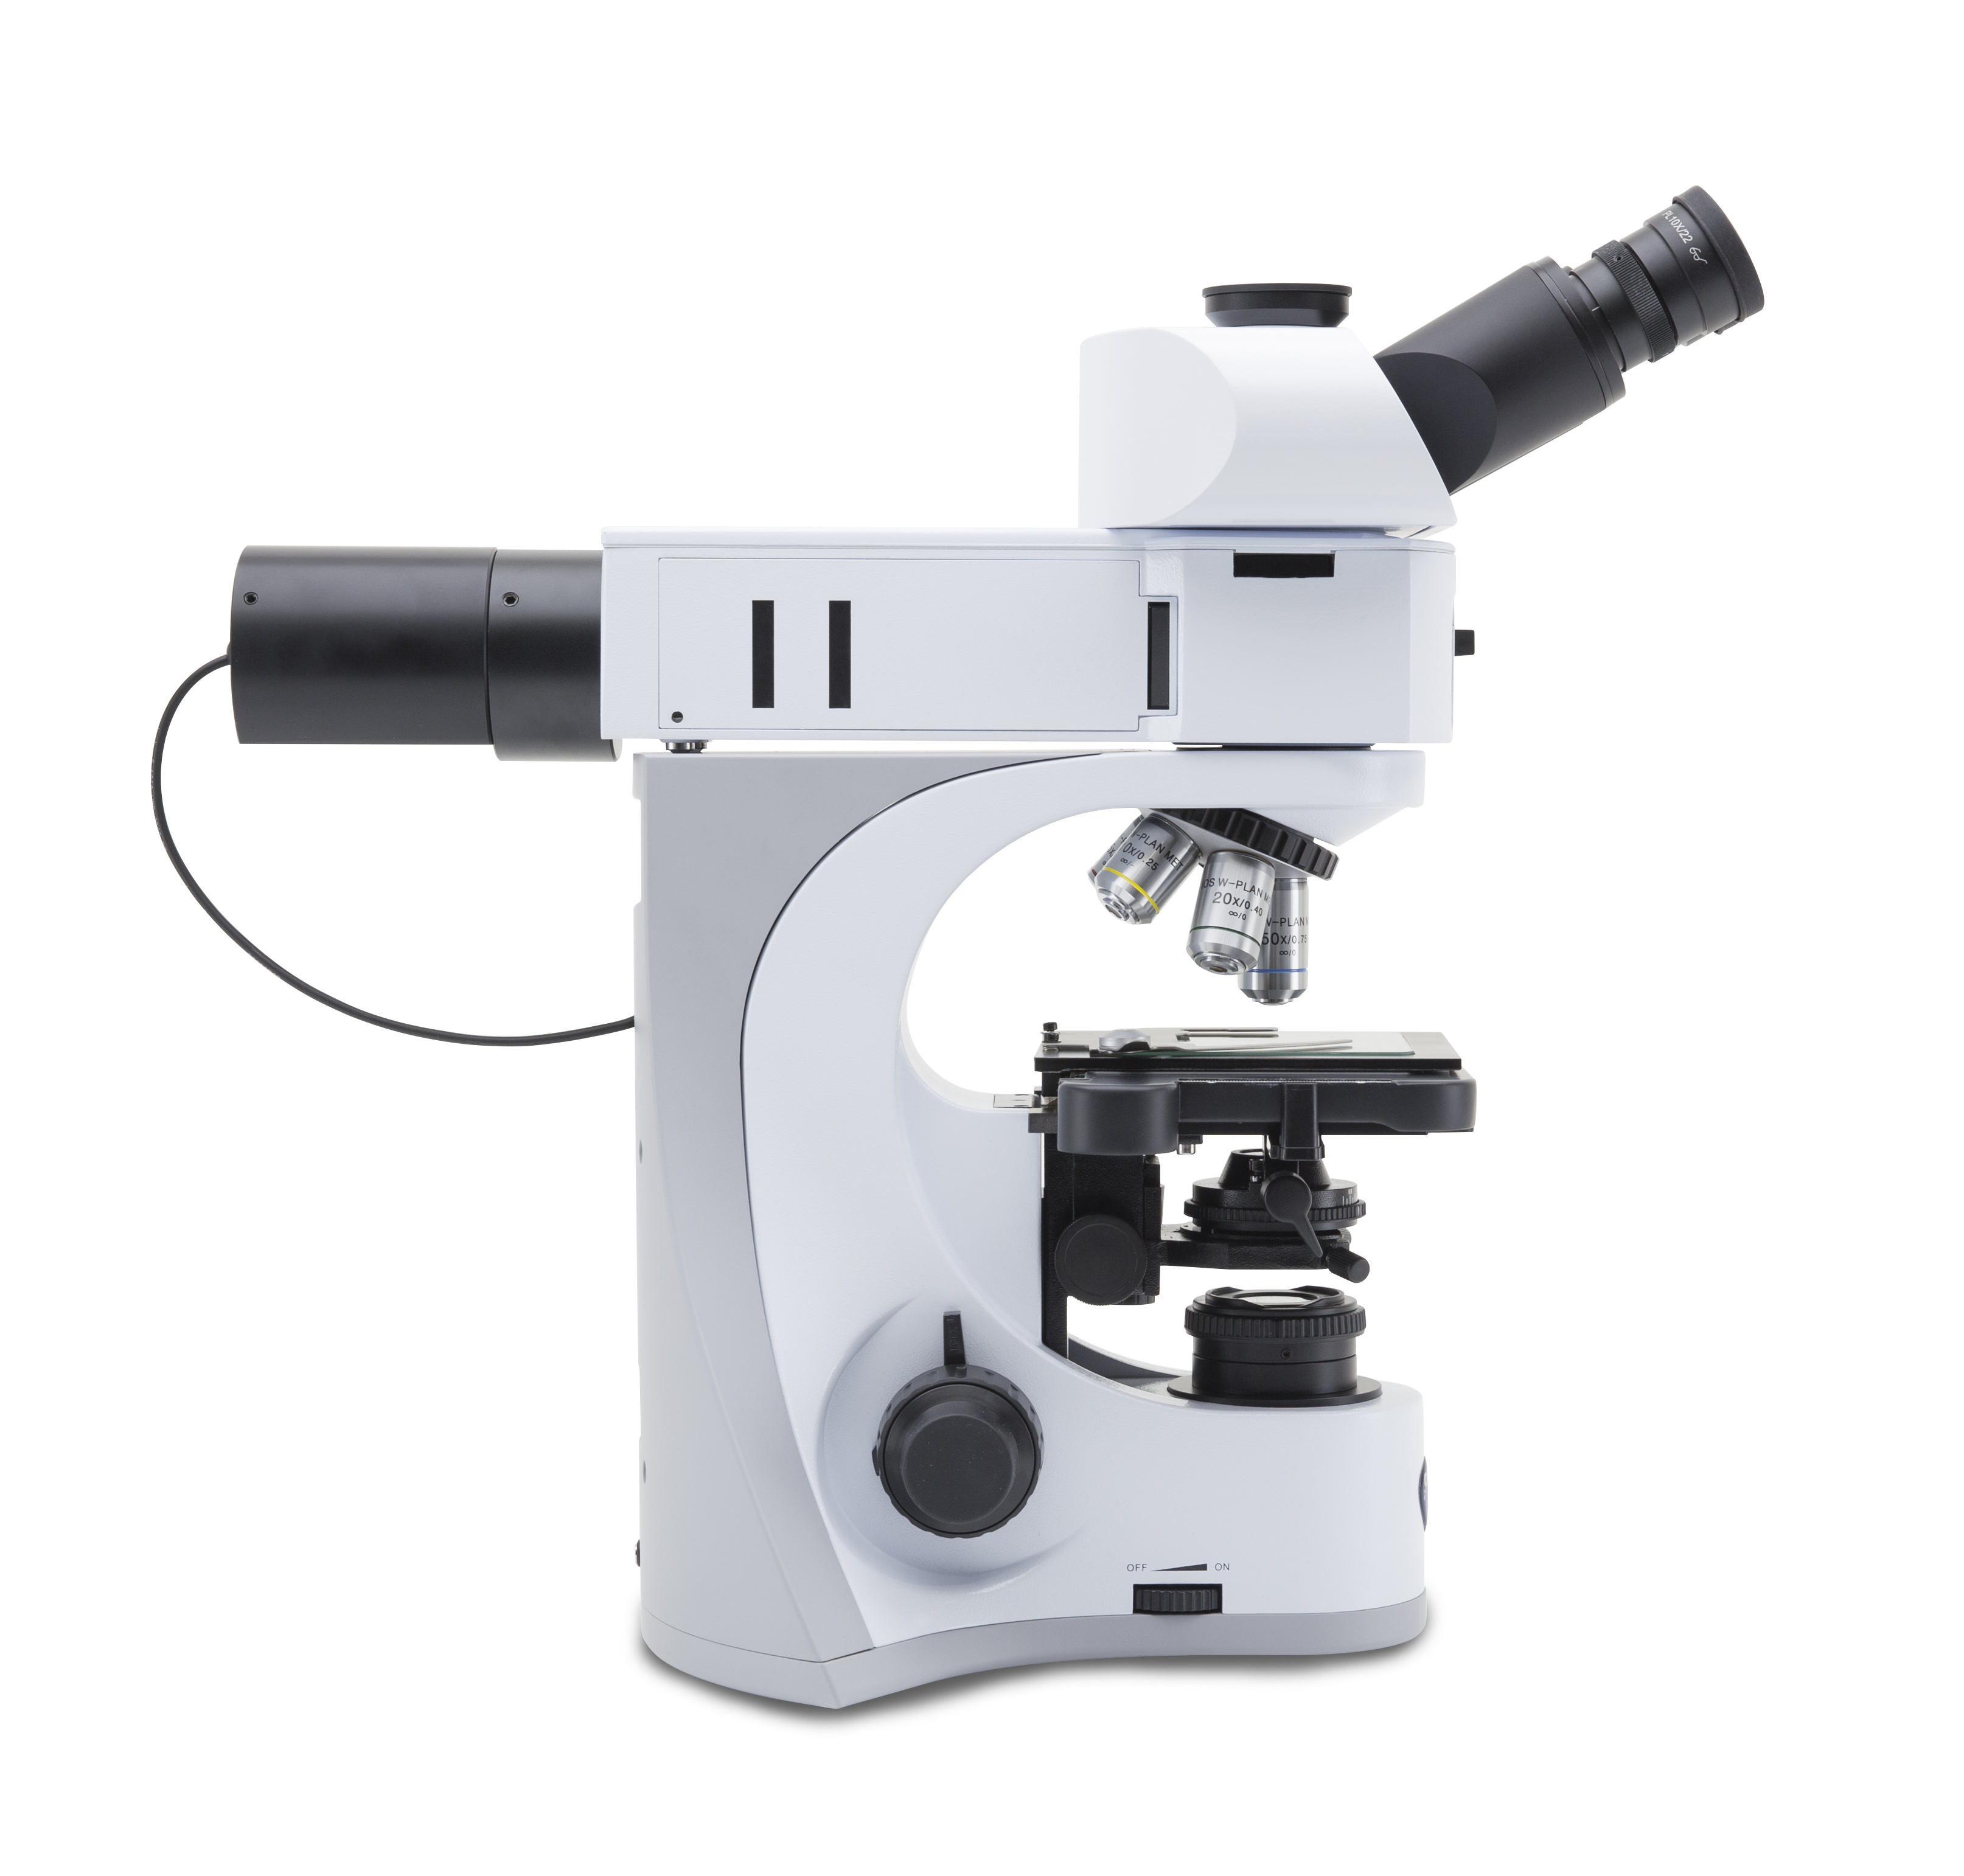 กล้องจุลทรรศน์แบบแสงตกกระทบสำหรับงานวัสดุและโลหะวิทยา (Metallurgical Upright Microscope) ยี่ห้อ OPTIKA รุ่น B-510METR